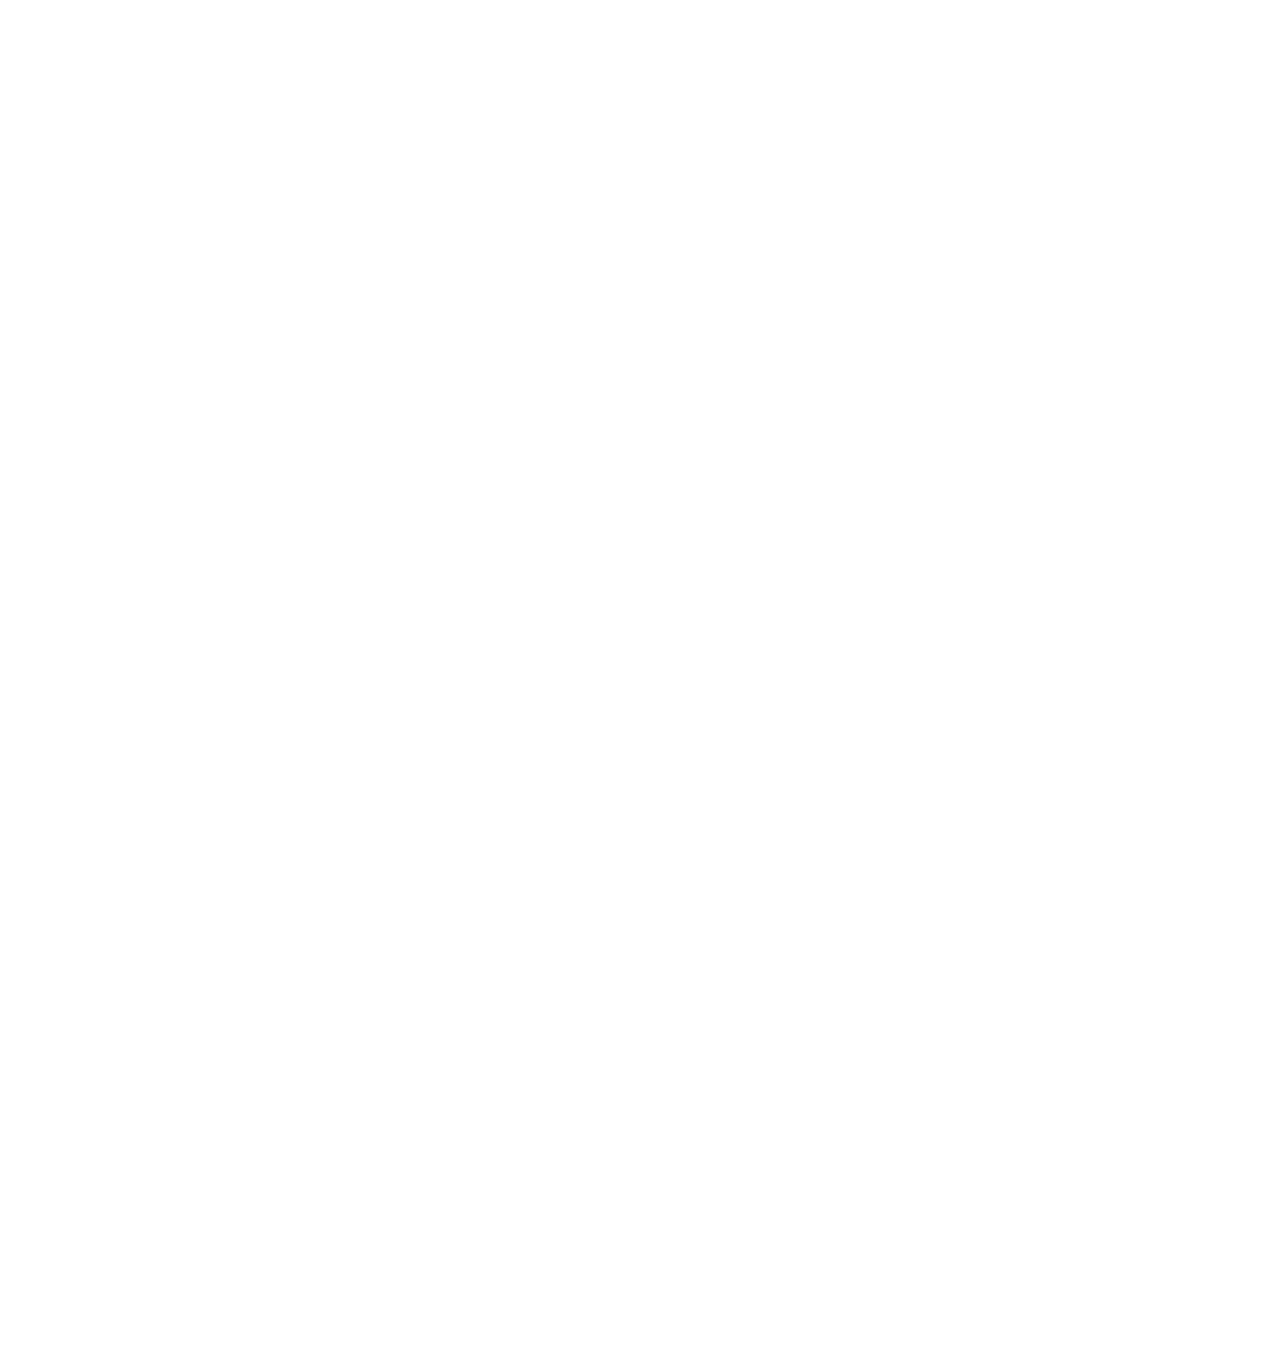 Carolina's Drywall's logo